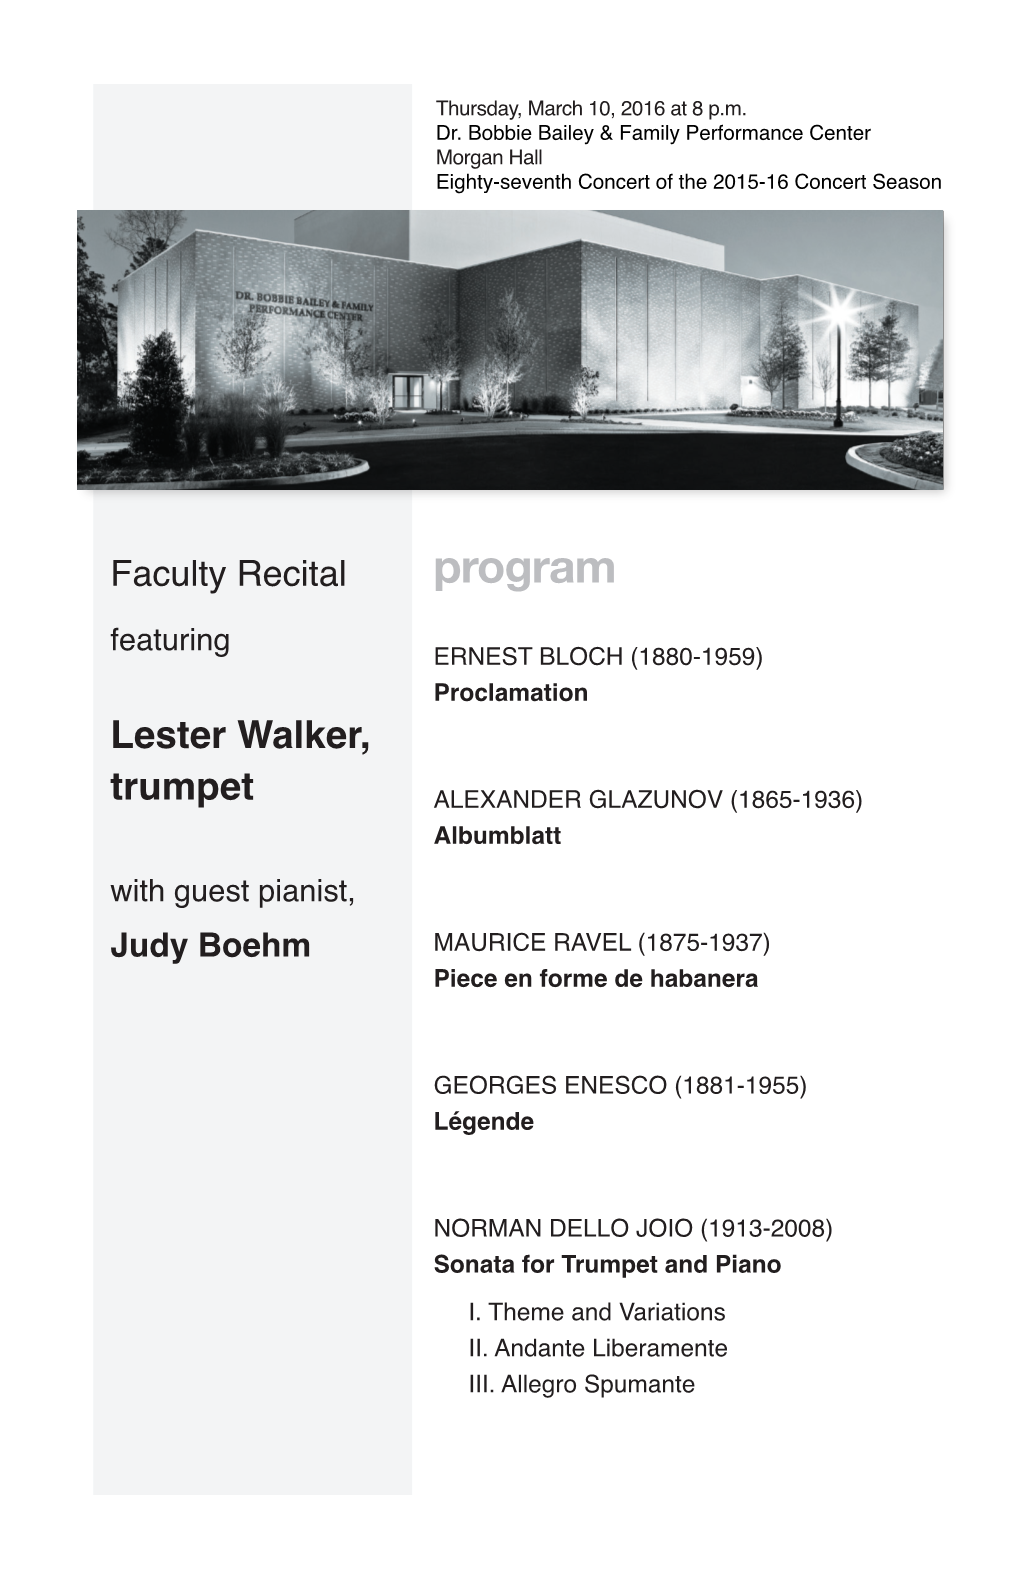 Faculty Recital: Lester Walker, Trumpet